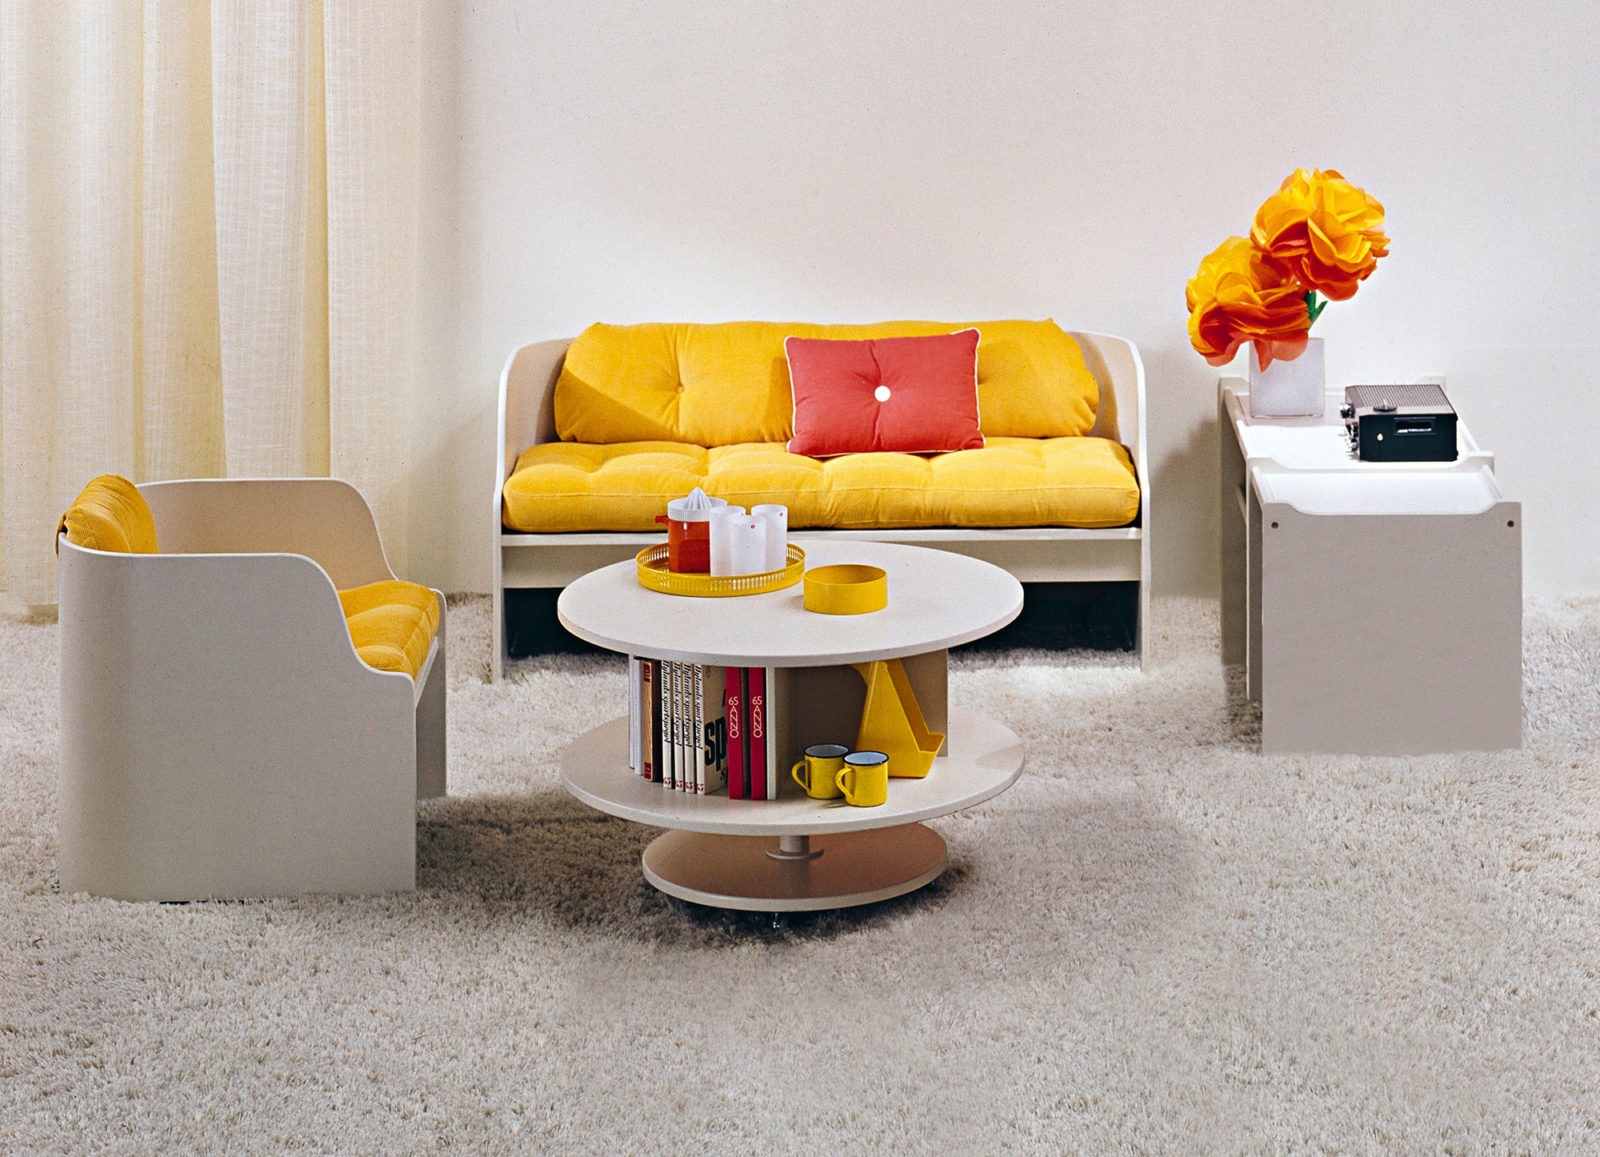 KATINKA & KARUSELL armchair, sofa and coffee table 1968.